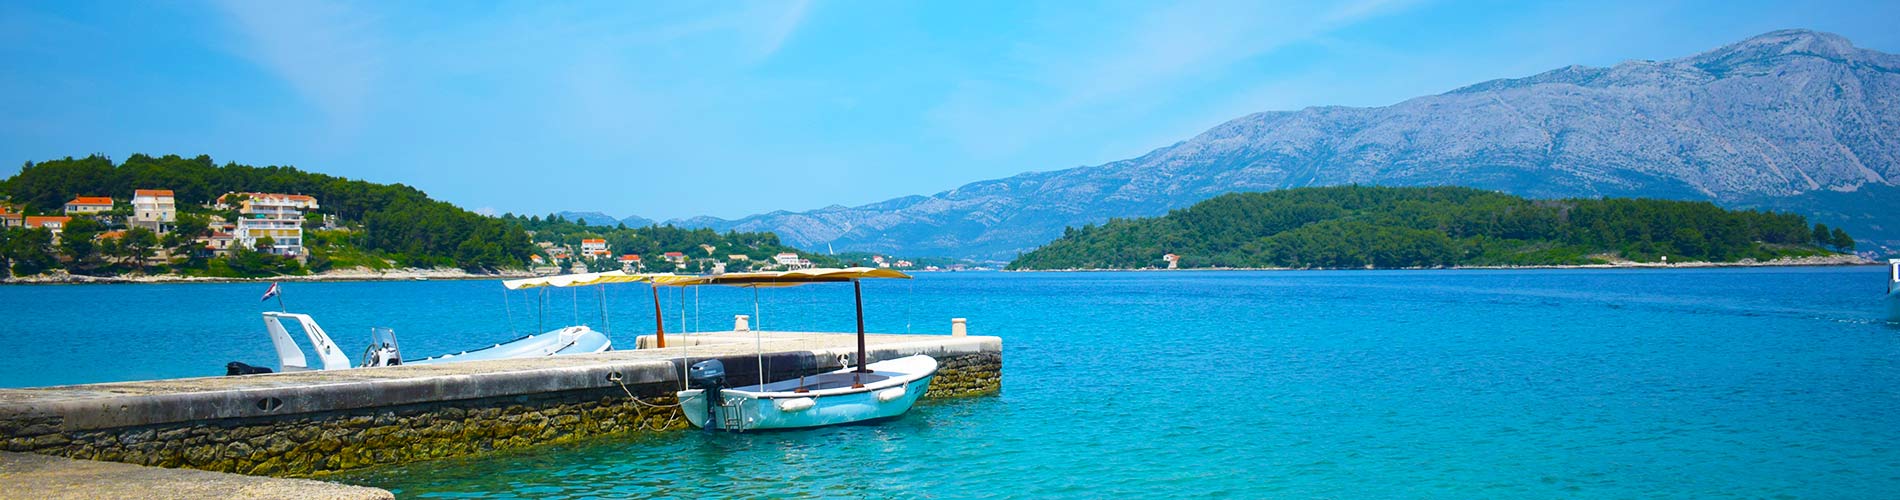 Lumbarda Island Holiday Korcula   Croatia.jpg